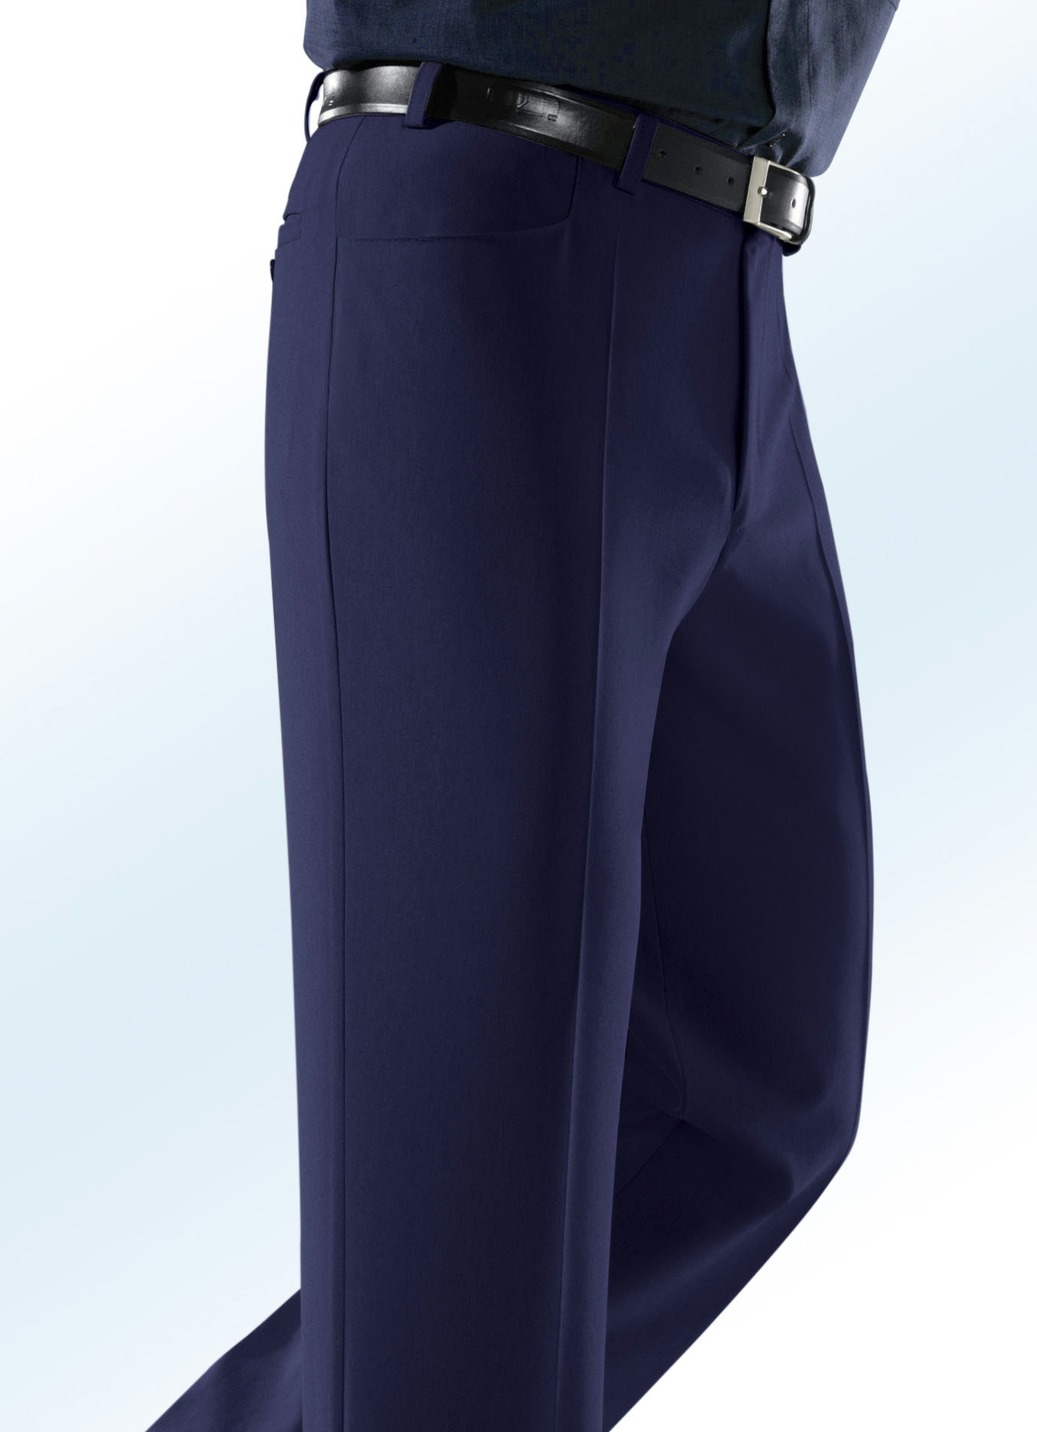 „Klaus Modelle“-Hose mit Seitentaschen, Marine, Größe 52 von KLAUS MODELLE